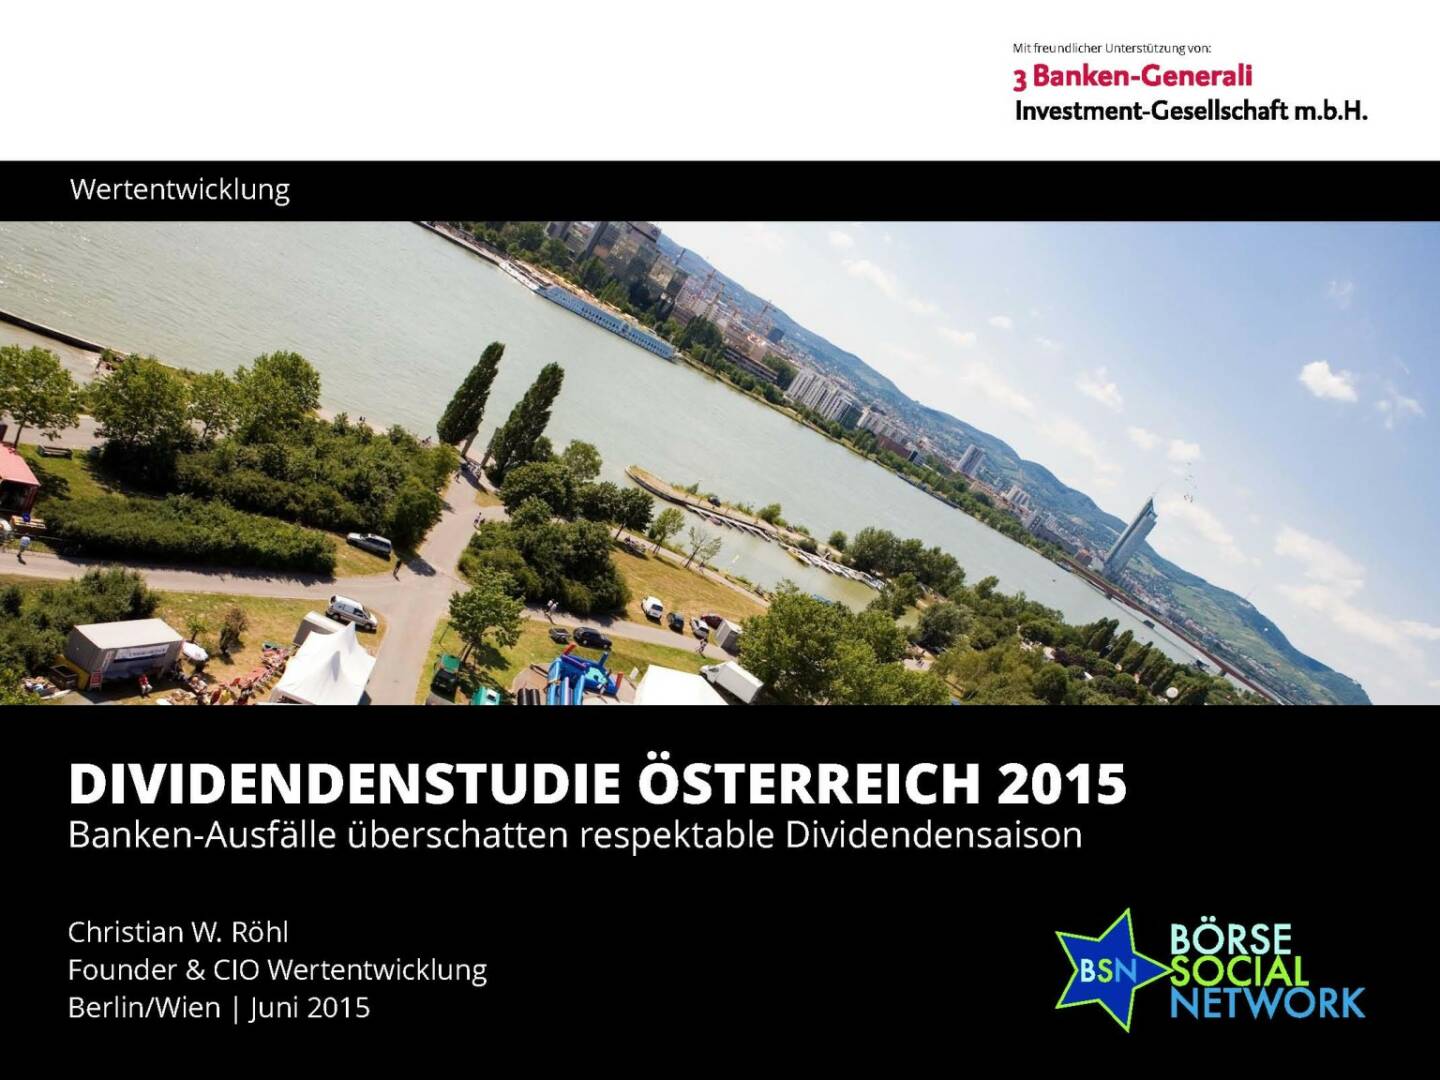 Dividendenstudie Österreich 2015